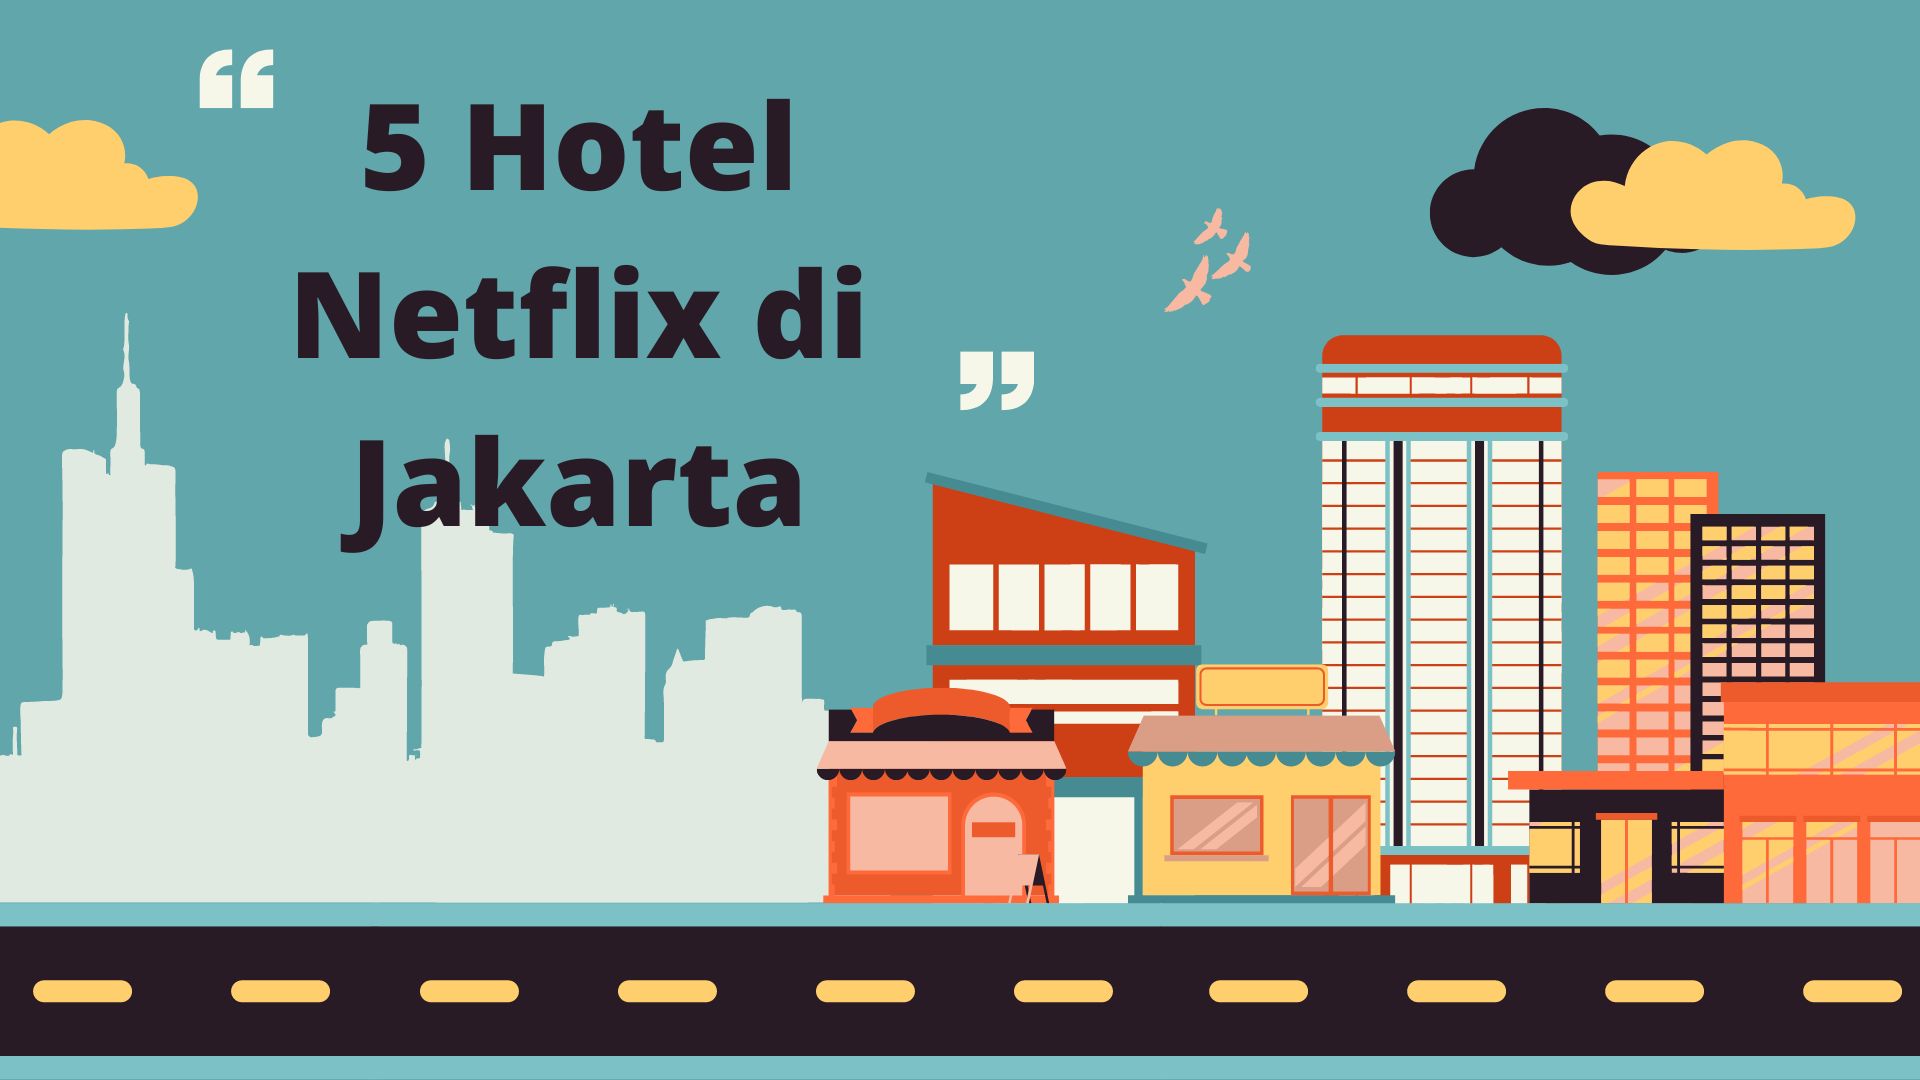 5 Hotel Netflix di Jakarta